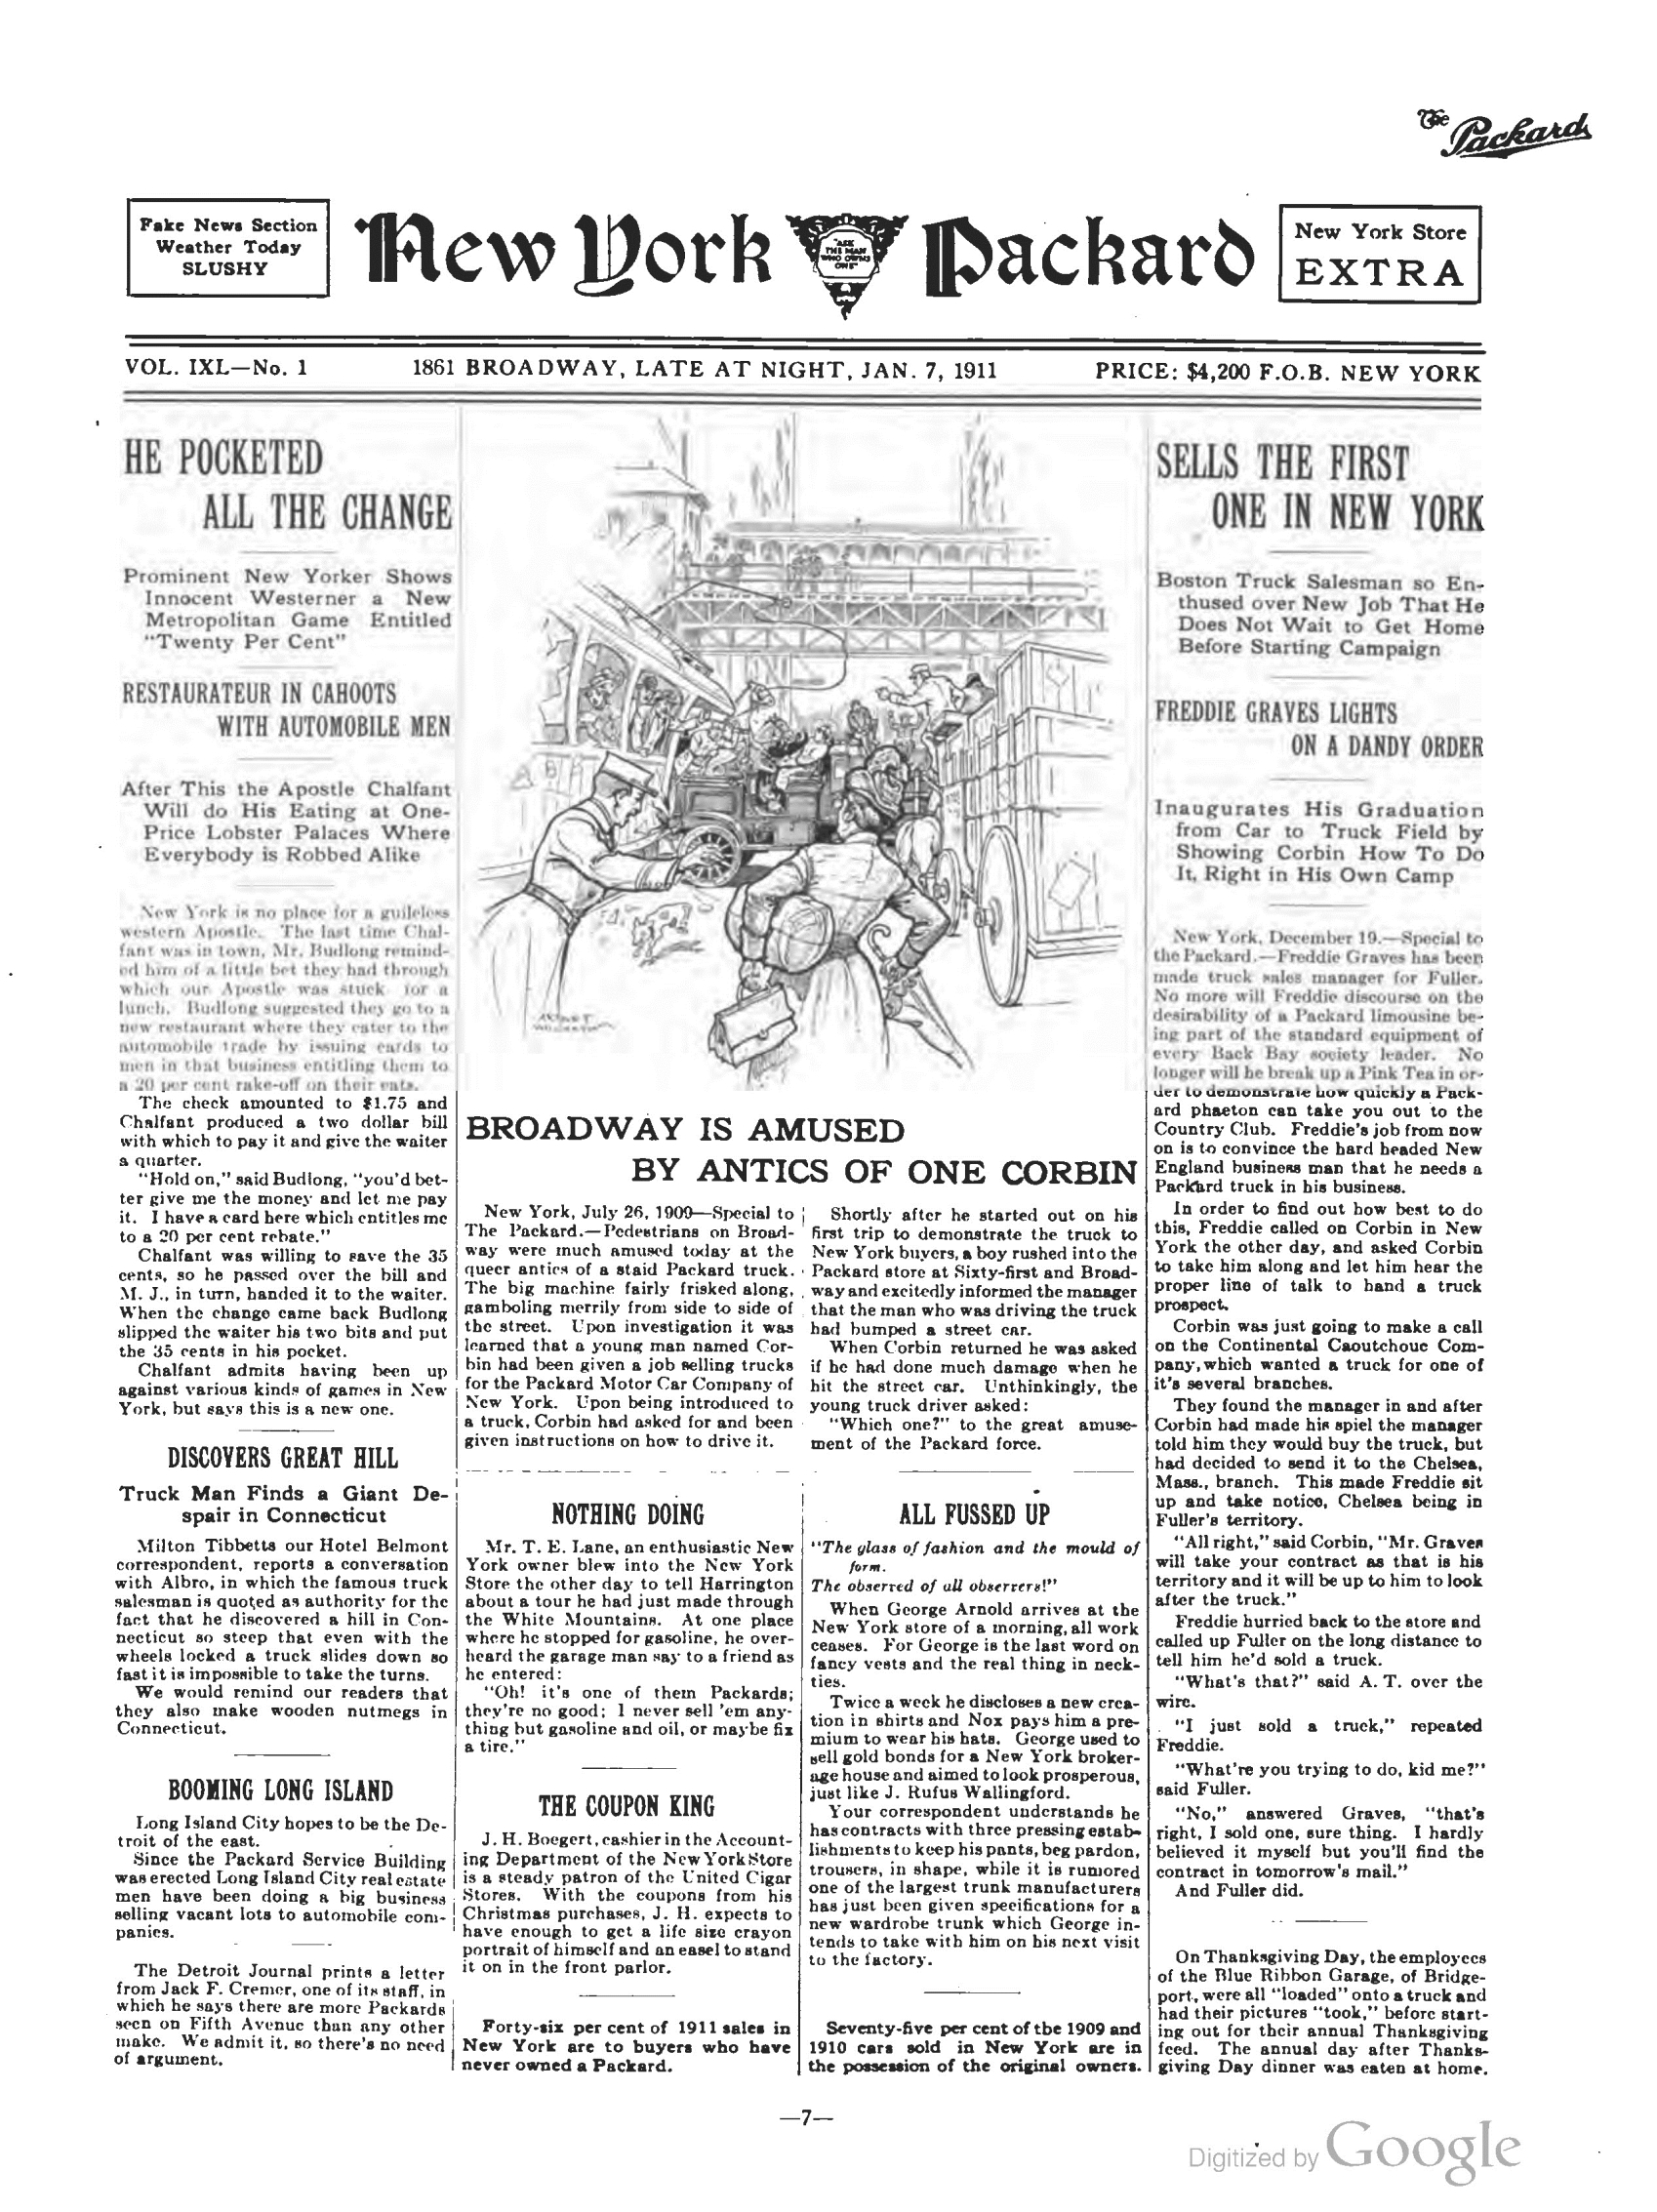 1910_The_Packard_Newsletter-257